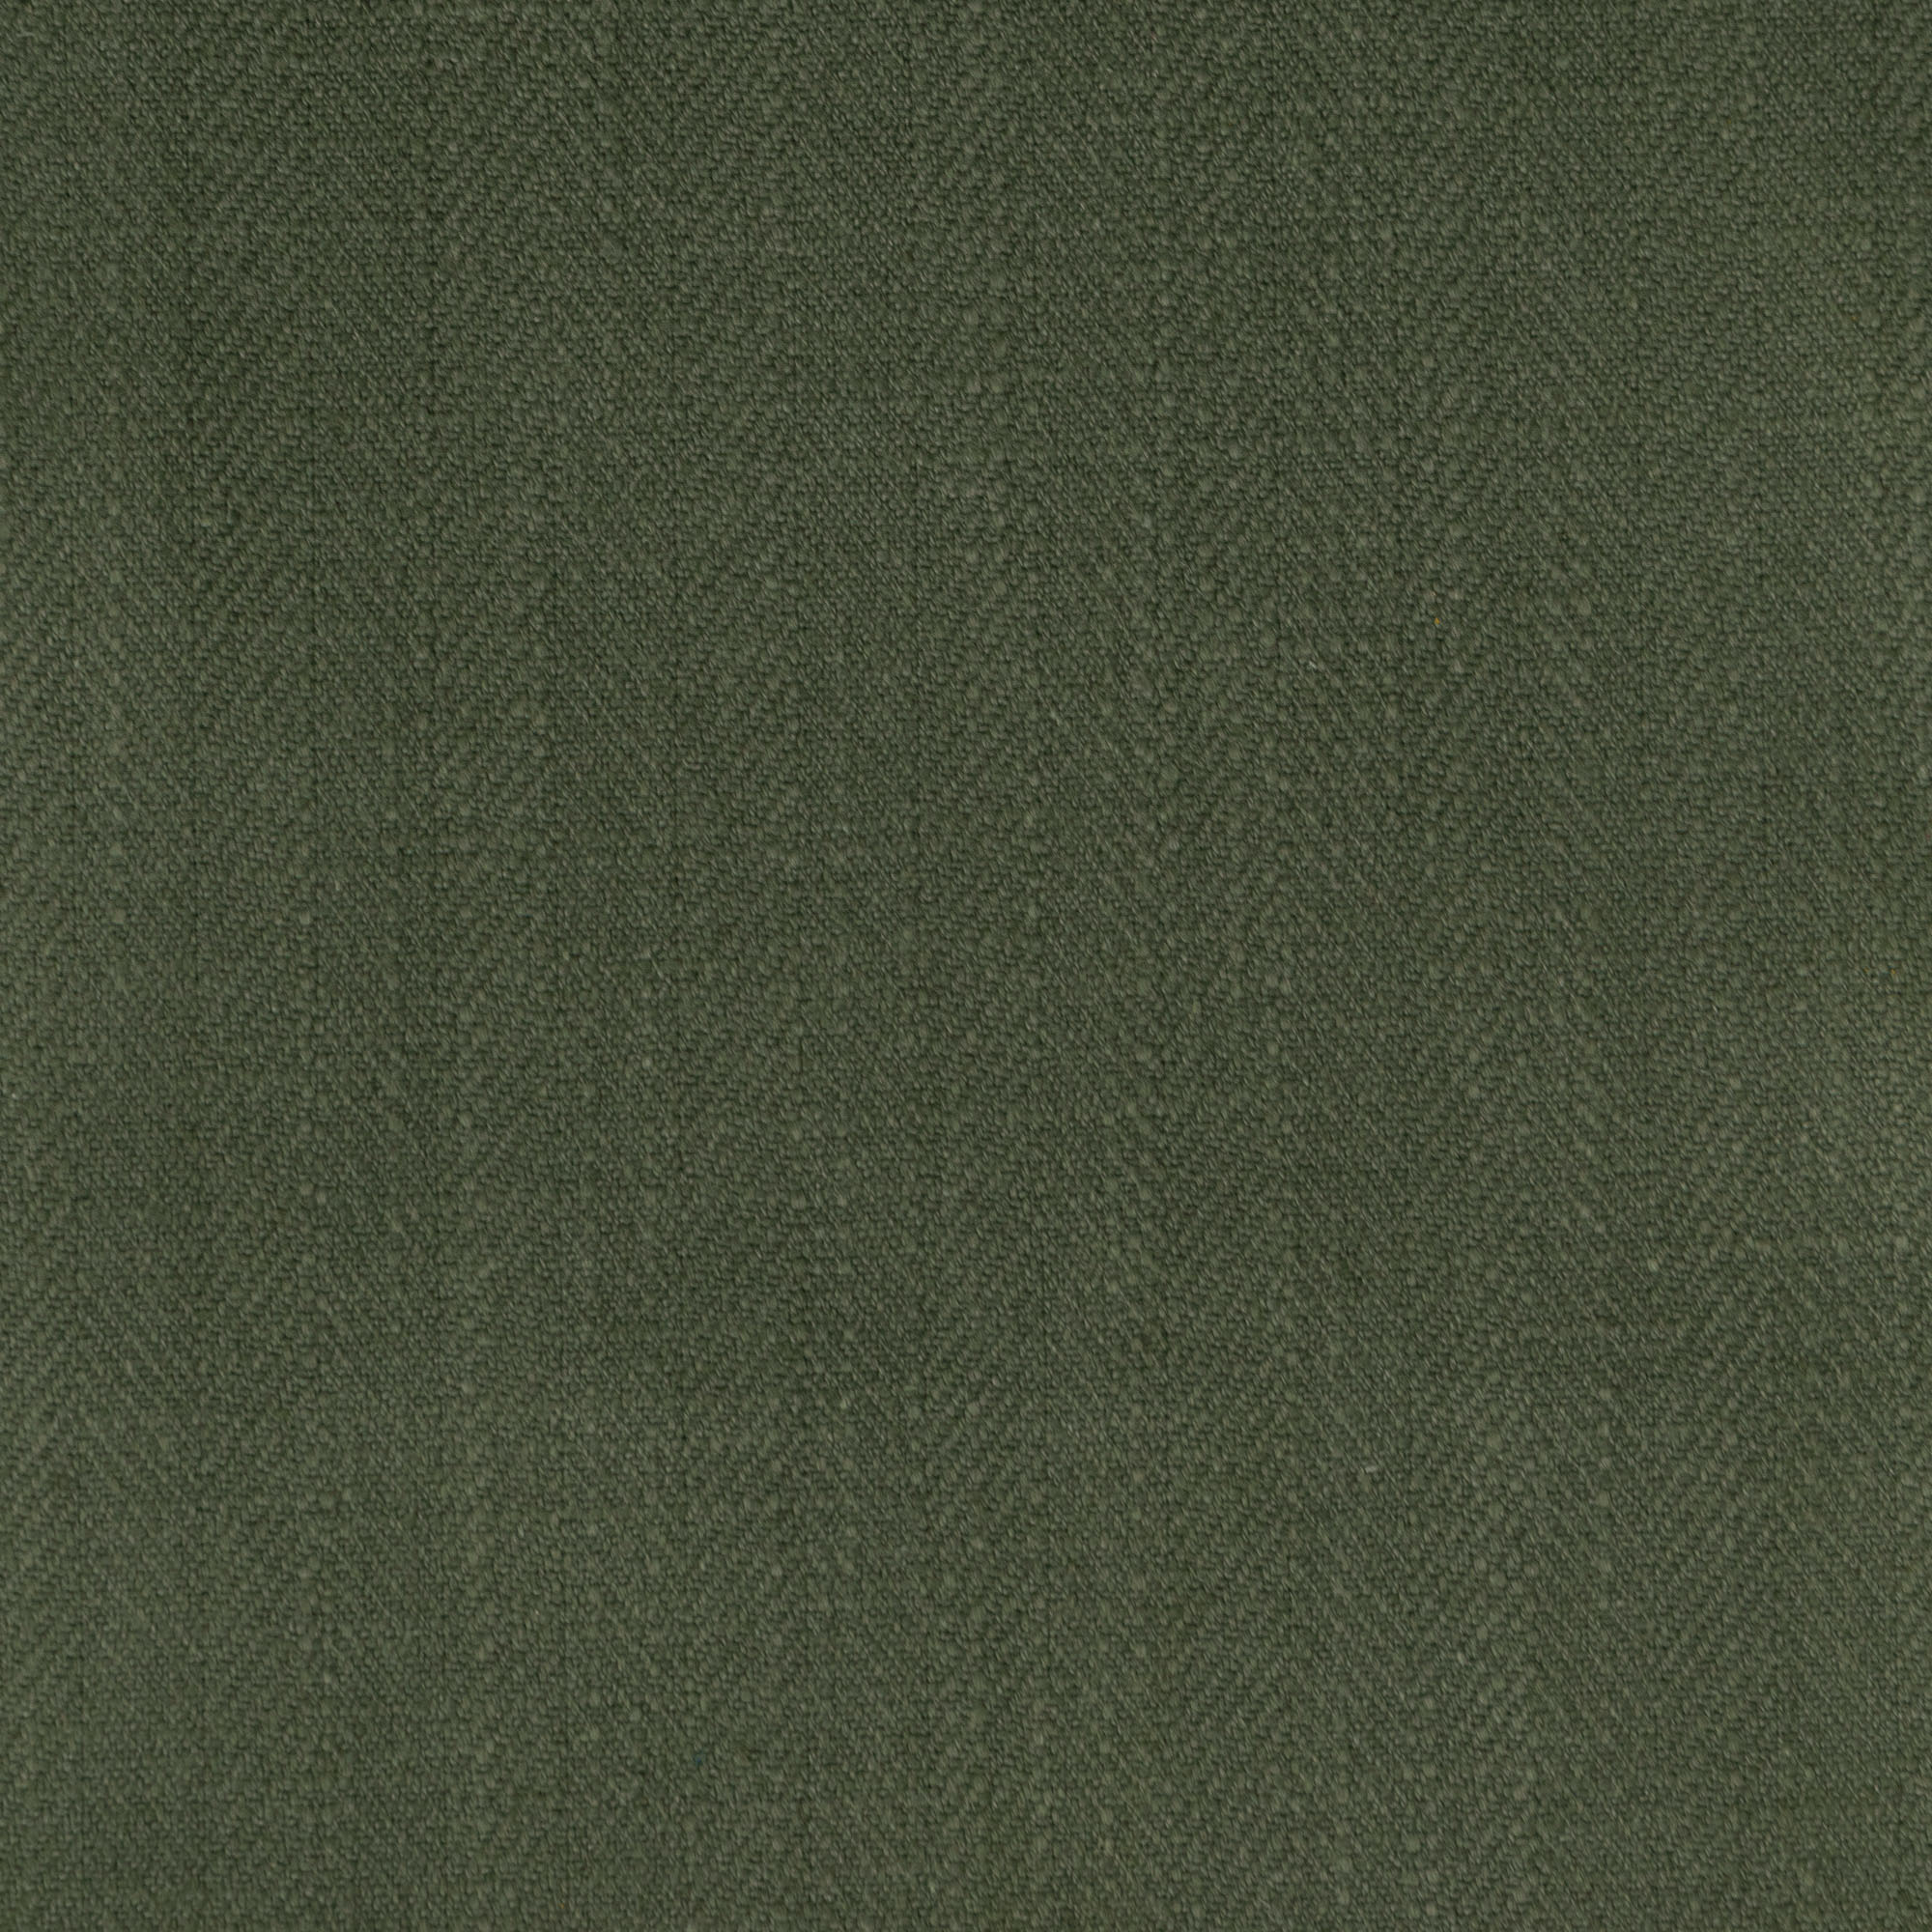 Gir Forest Night Cotton Linen Blend Fabric Swatch 6" x 6"